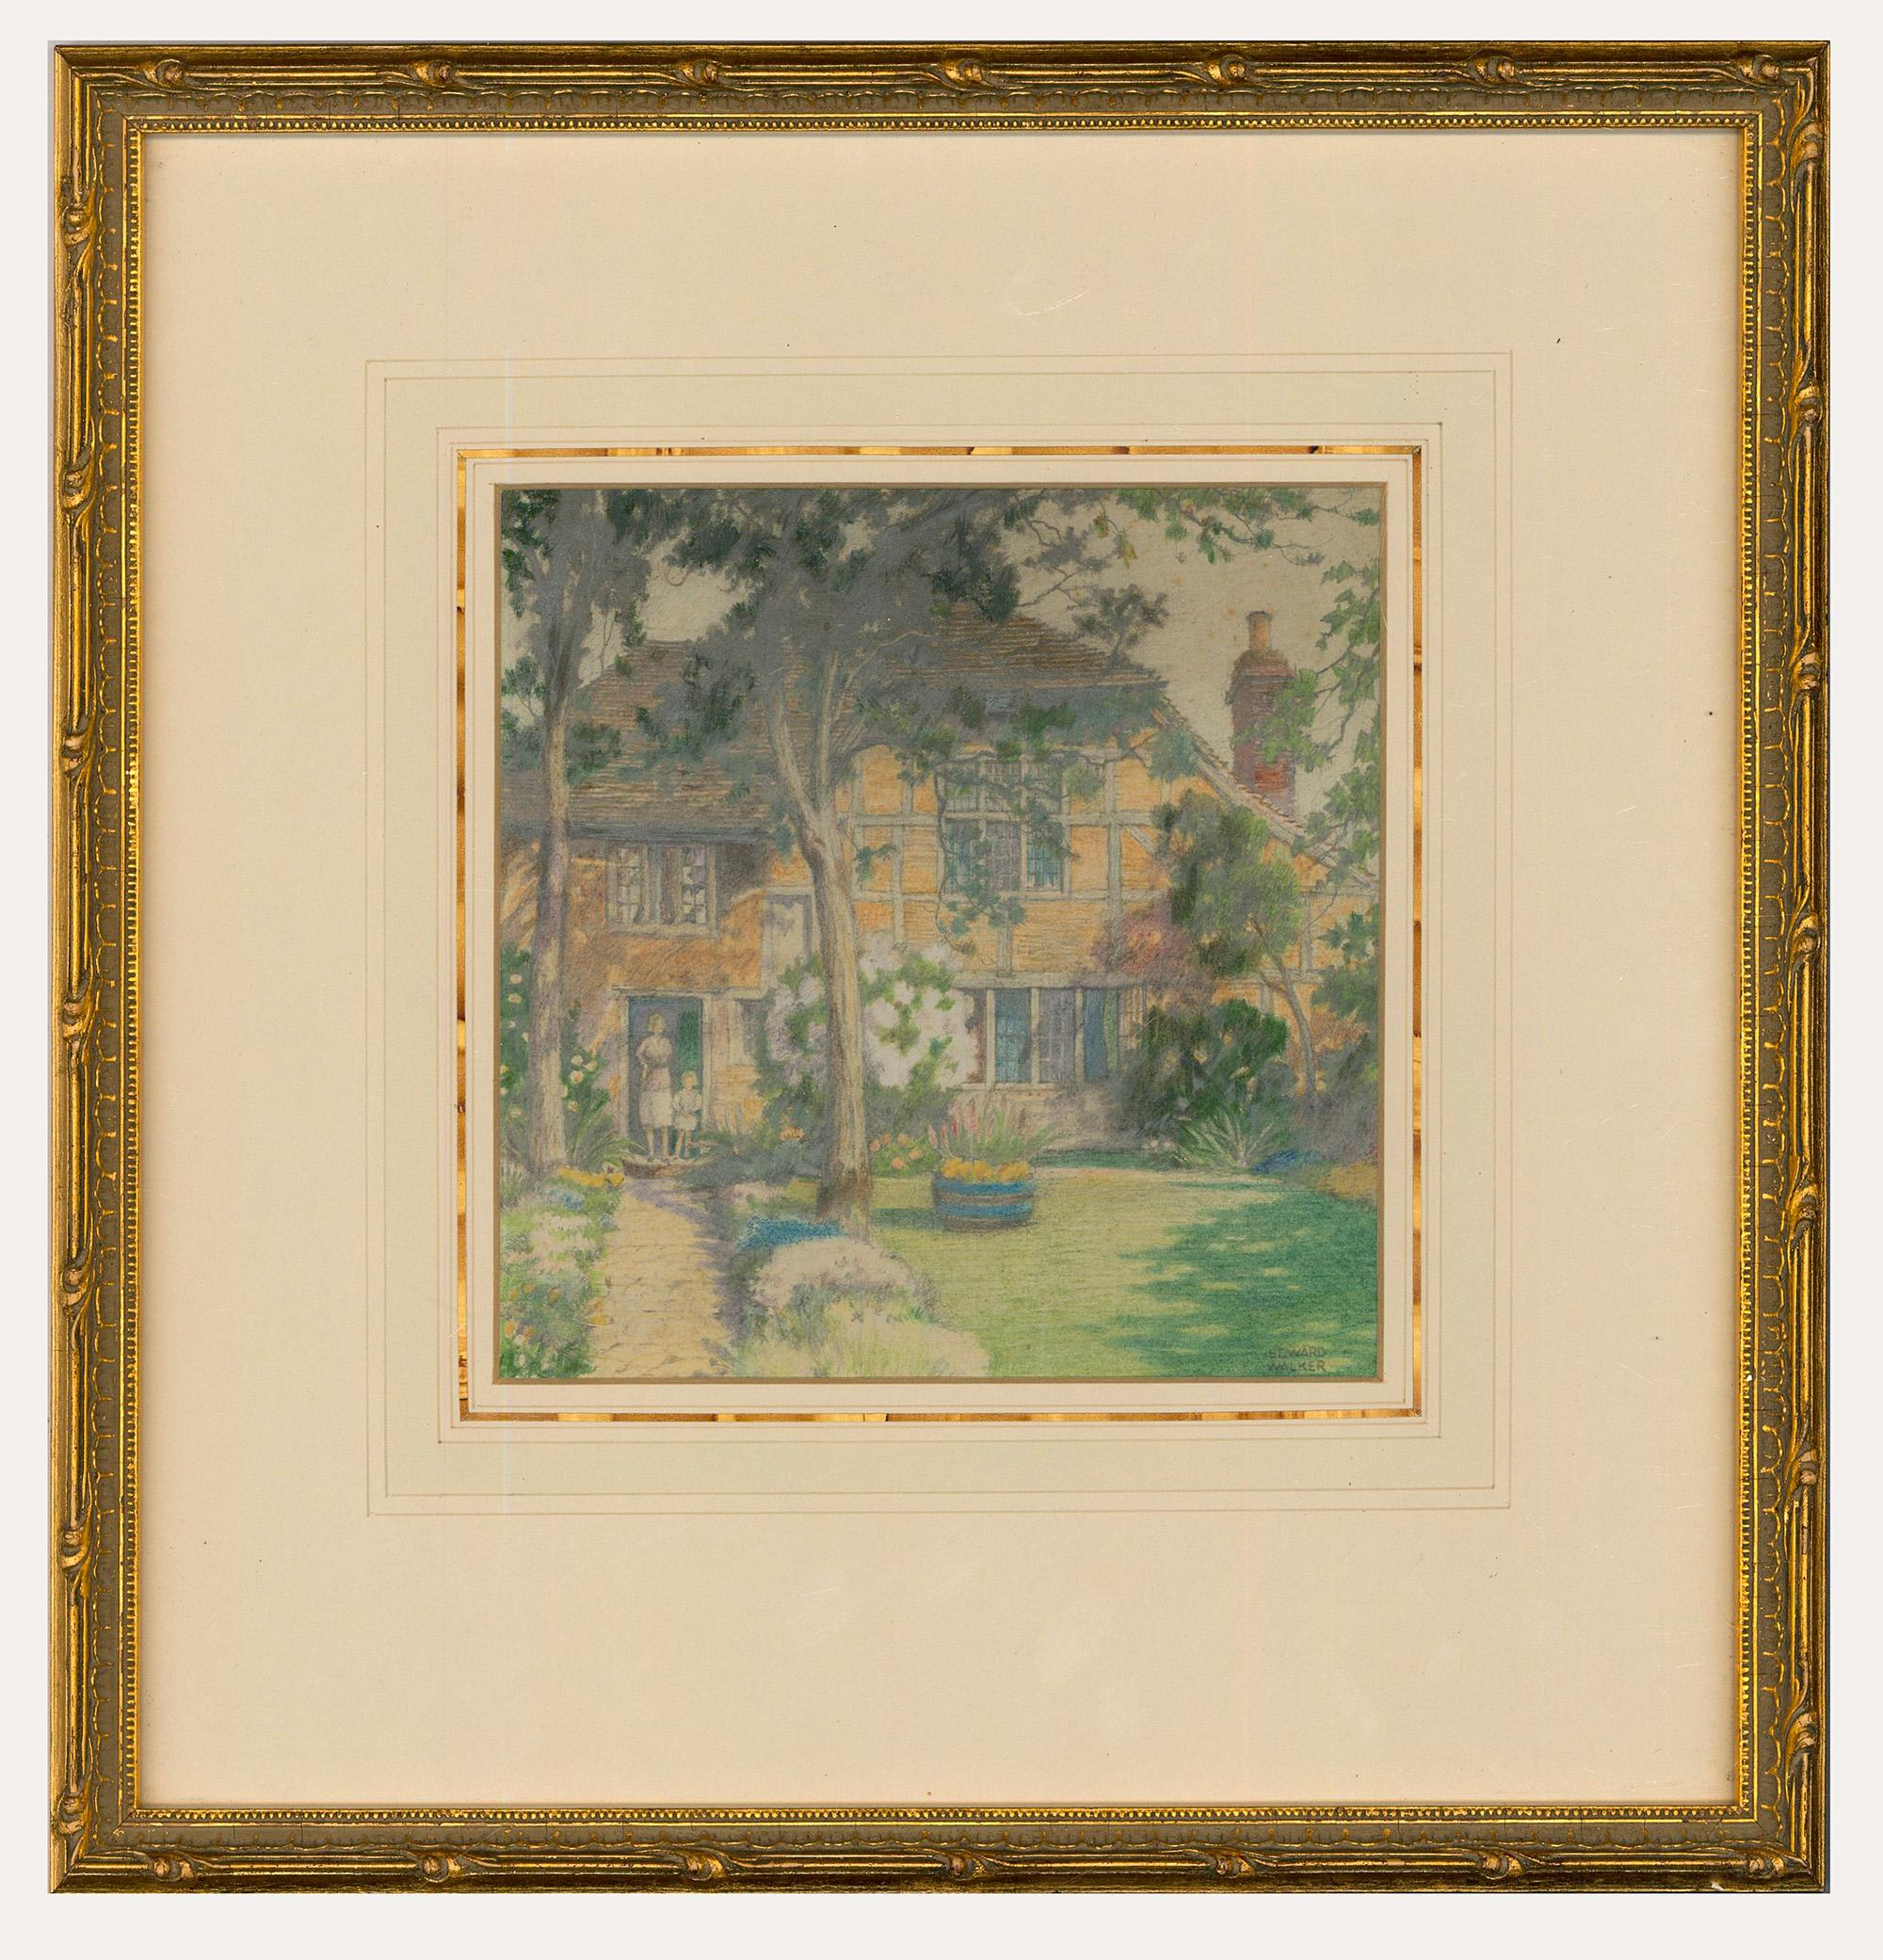 Représentation détaillée d'une grande maison de campagne par l'artiste britannique Edward Walker (1879-1955). La scène montre une mère et sa fille sur le perron de leur grande maison de campagne, avec des bordures d'été de part et d'autre d'une